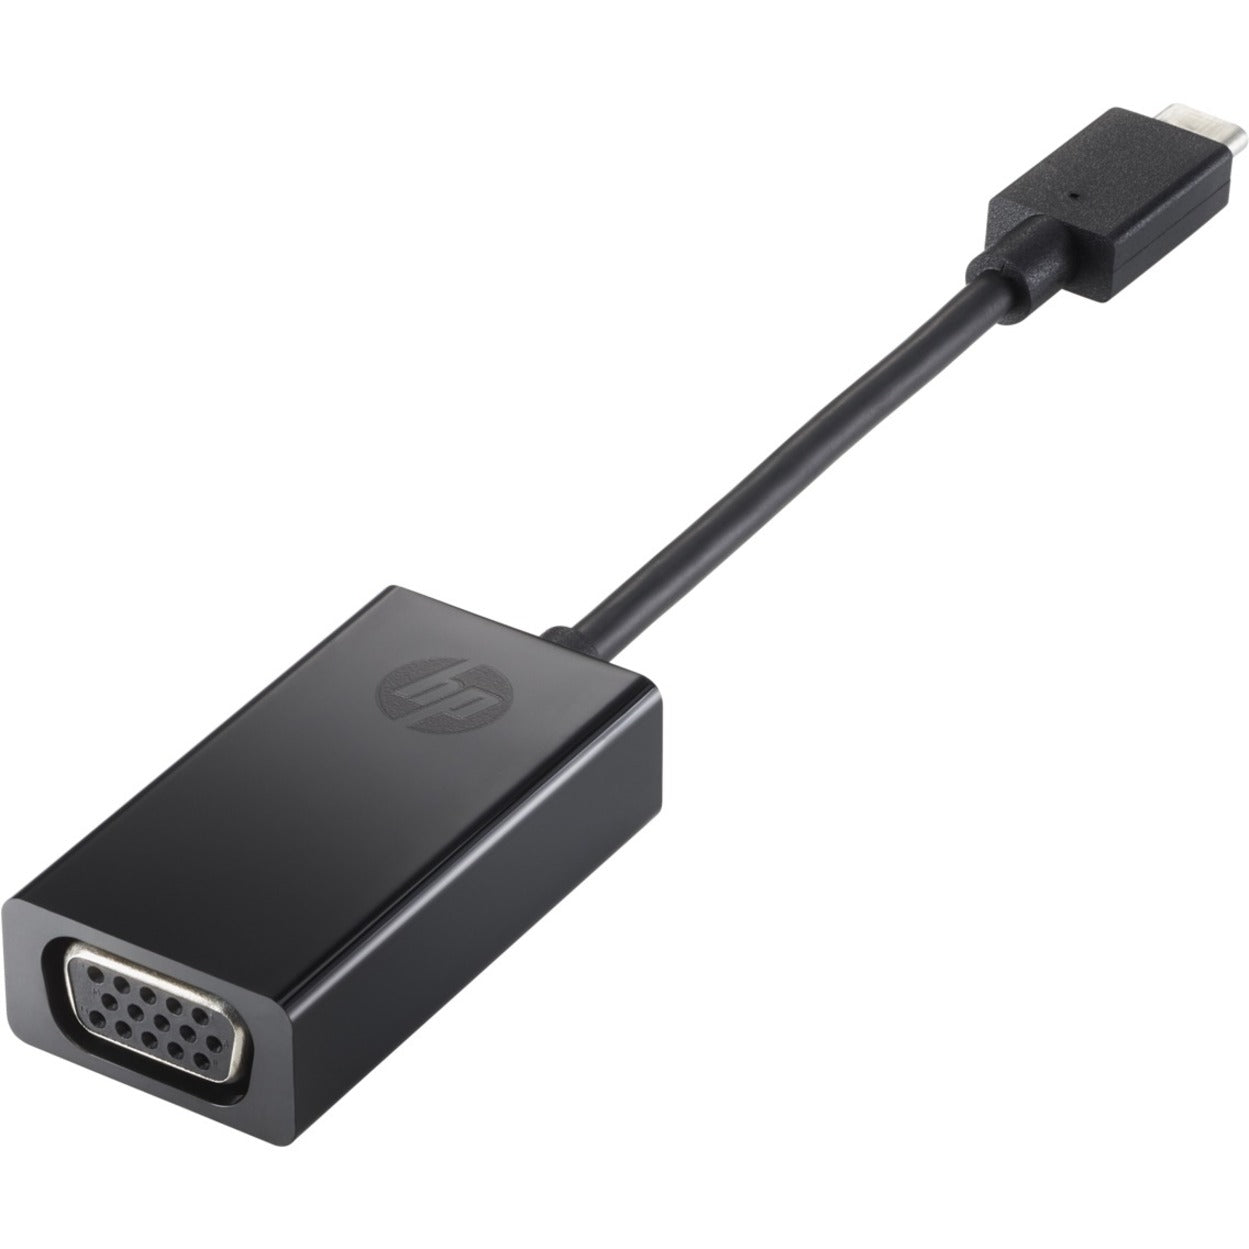 HP USB-C to VGA アダプタ、USB Type C デバイス を VGA ディスプレイ に接続、 ブランド名: HP (エイチピー)